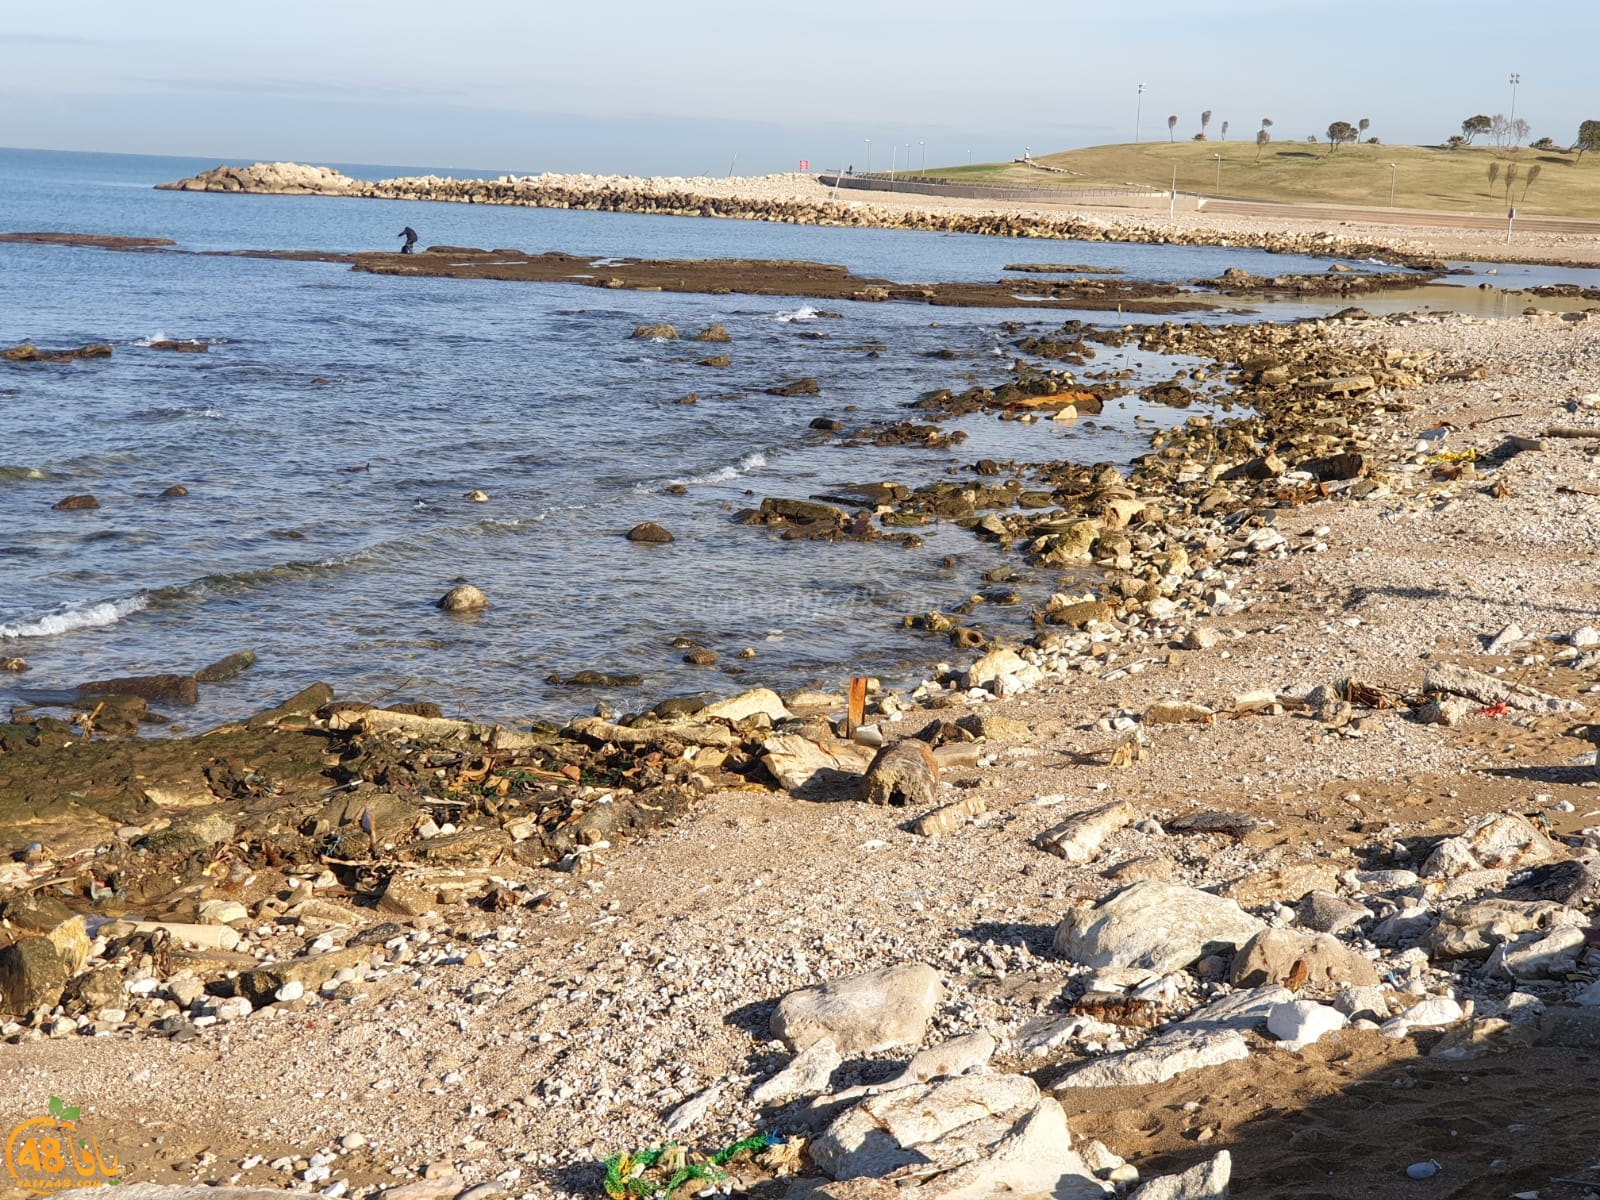  فيديو: تراجع في مستوى مياه البحر على شاطئ العجمي يافا